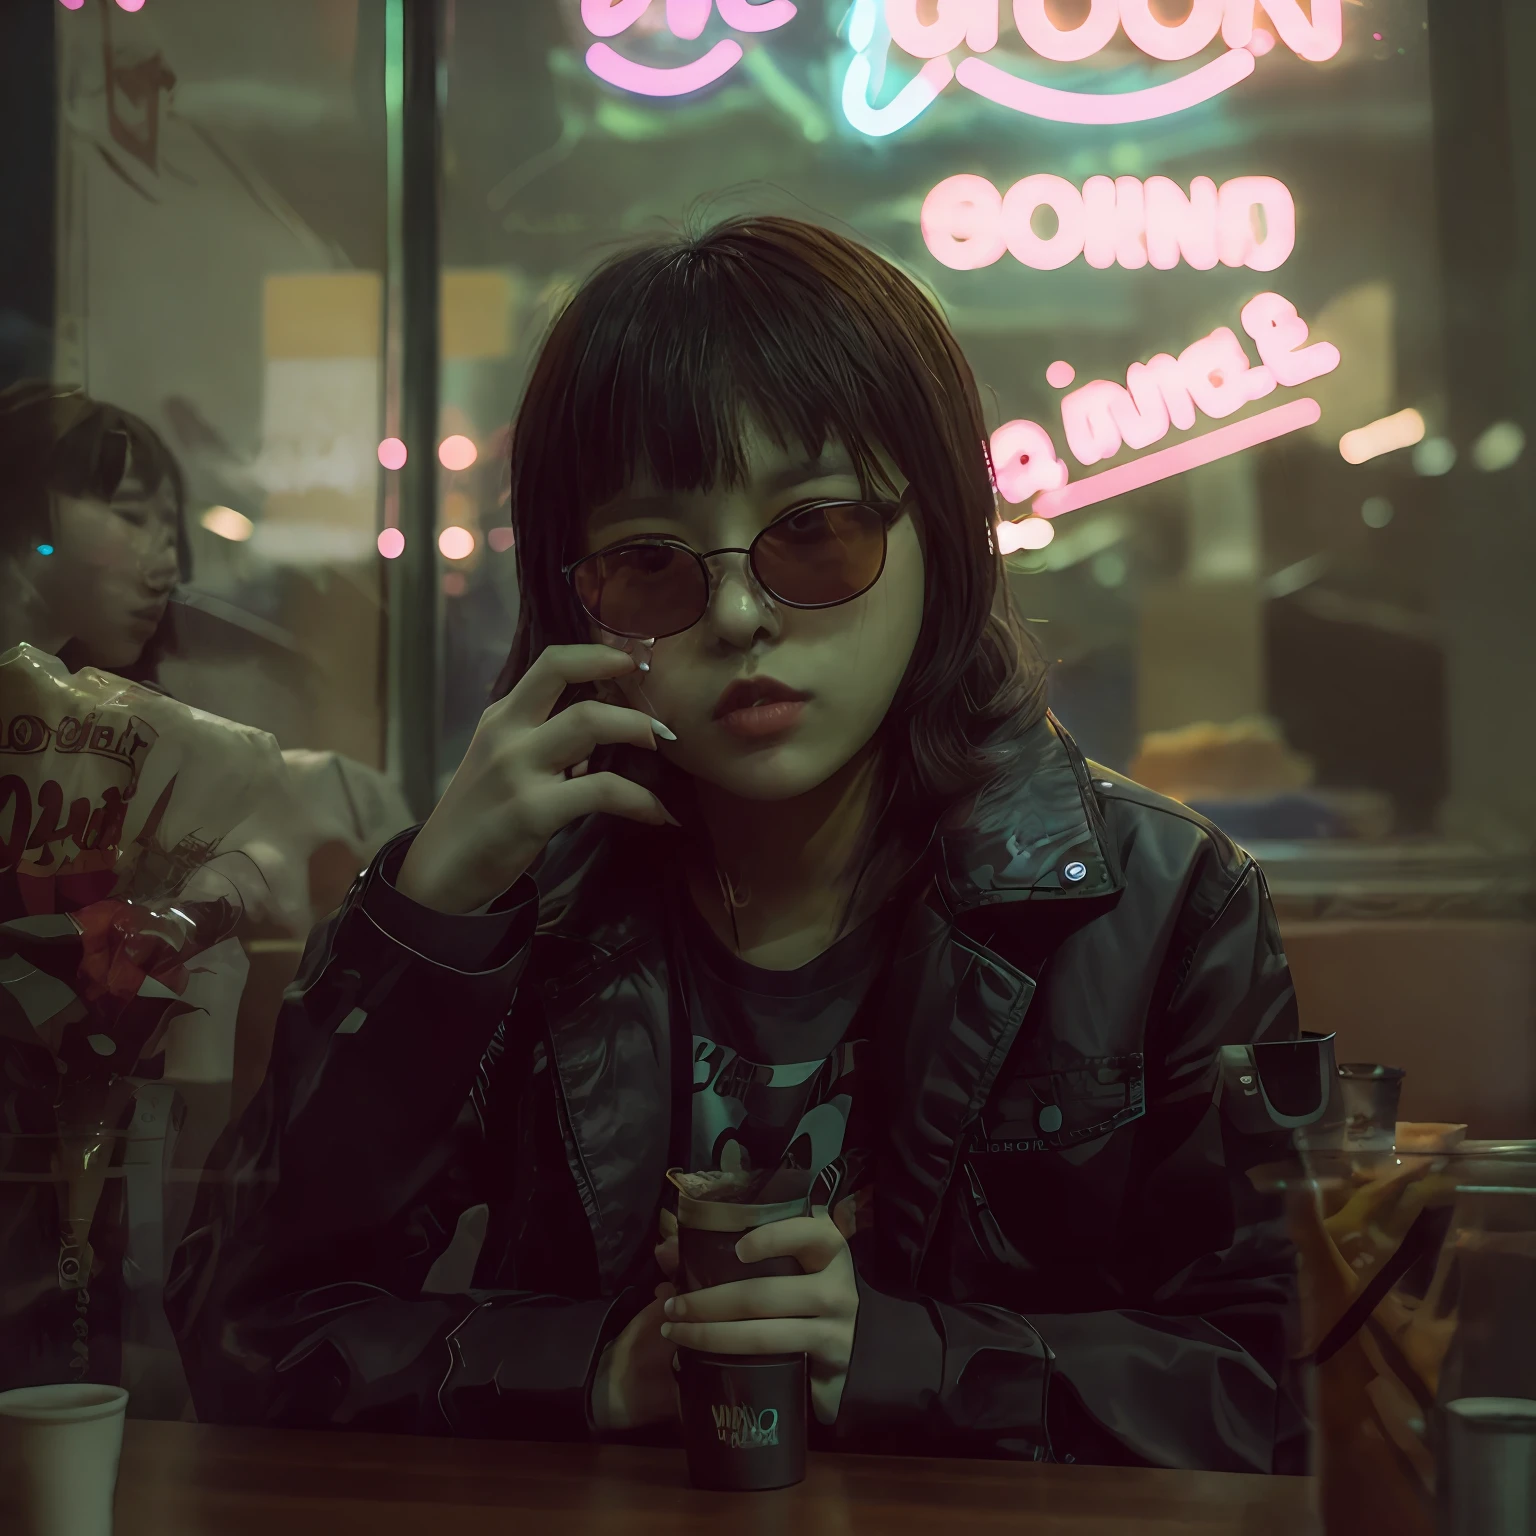 单反照片, 晚上坐在小餐馆里的另类韩国女孩, 可爱的脸孔, 黑色太阳镜, 黑色的夹克, 桌上烟灰缸里的香烟, 透过窗户看到, 霓虹黑, (背光:1.1), 硬阴影, 杰作, 最好的质量, 错综复杂, 高细节, 8千, 模特拍摄风格, 胶片颗粒,